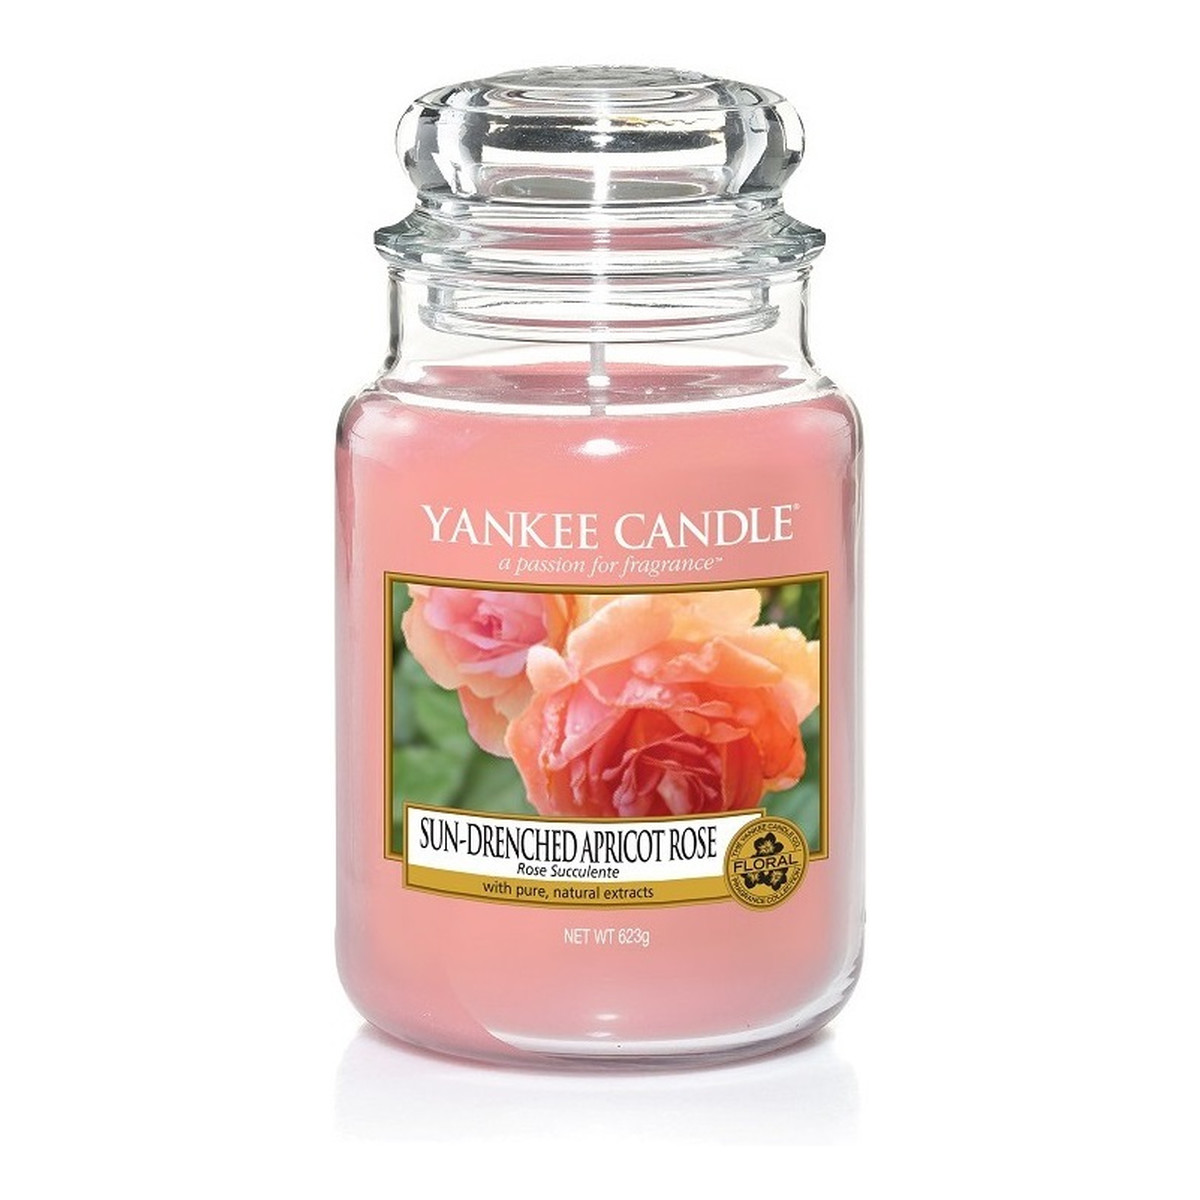 Yankee Candle Świeca zapachowa duży słój sun-drenched apricot rose 623g